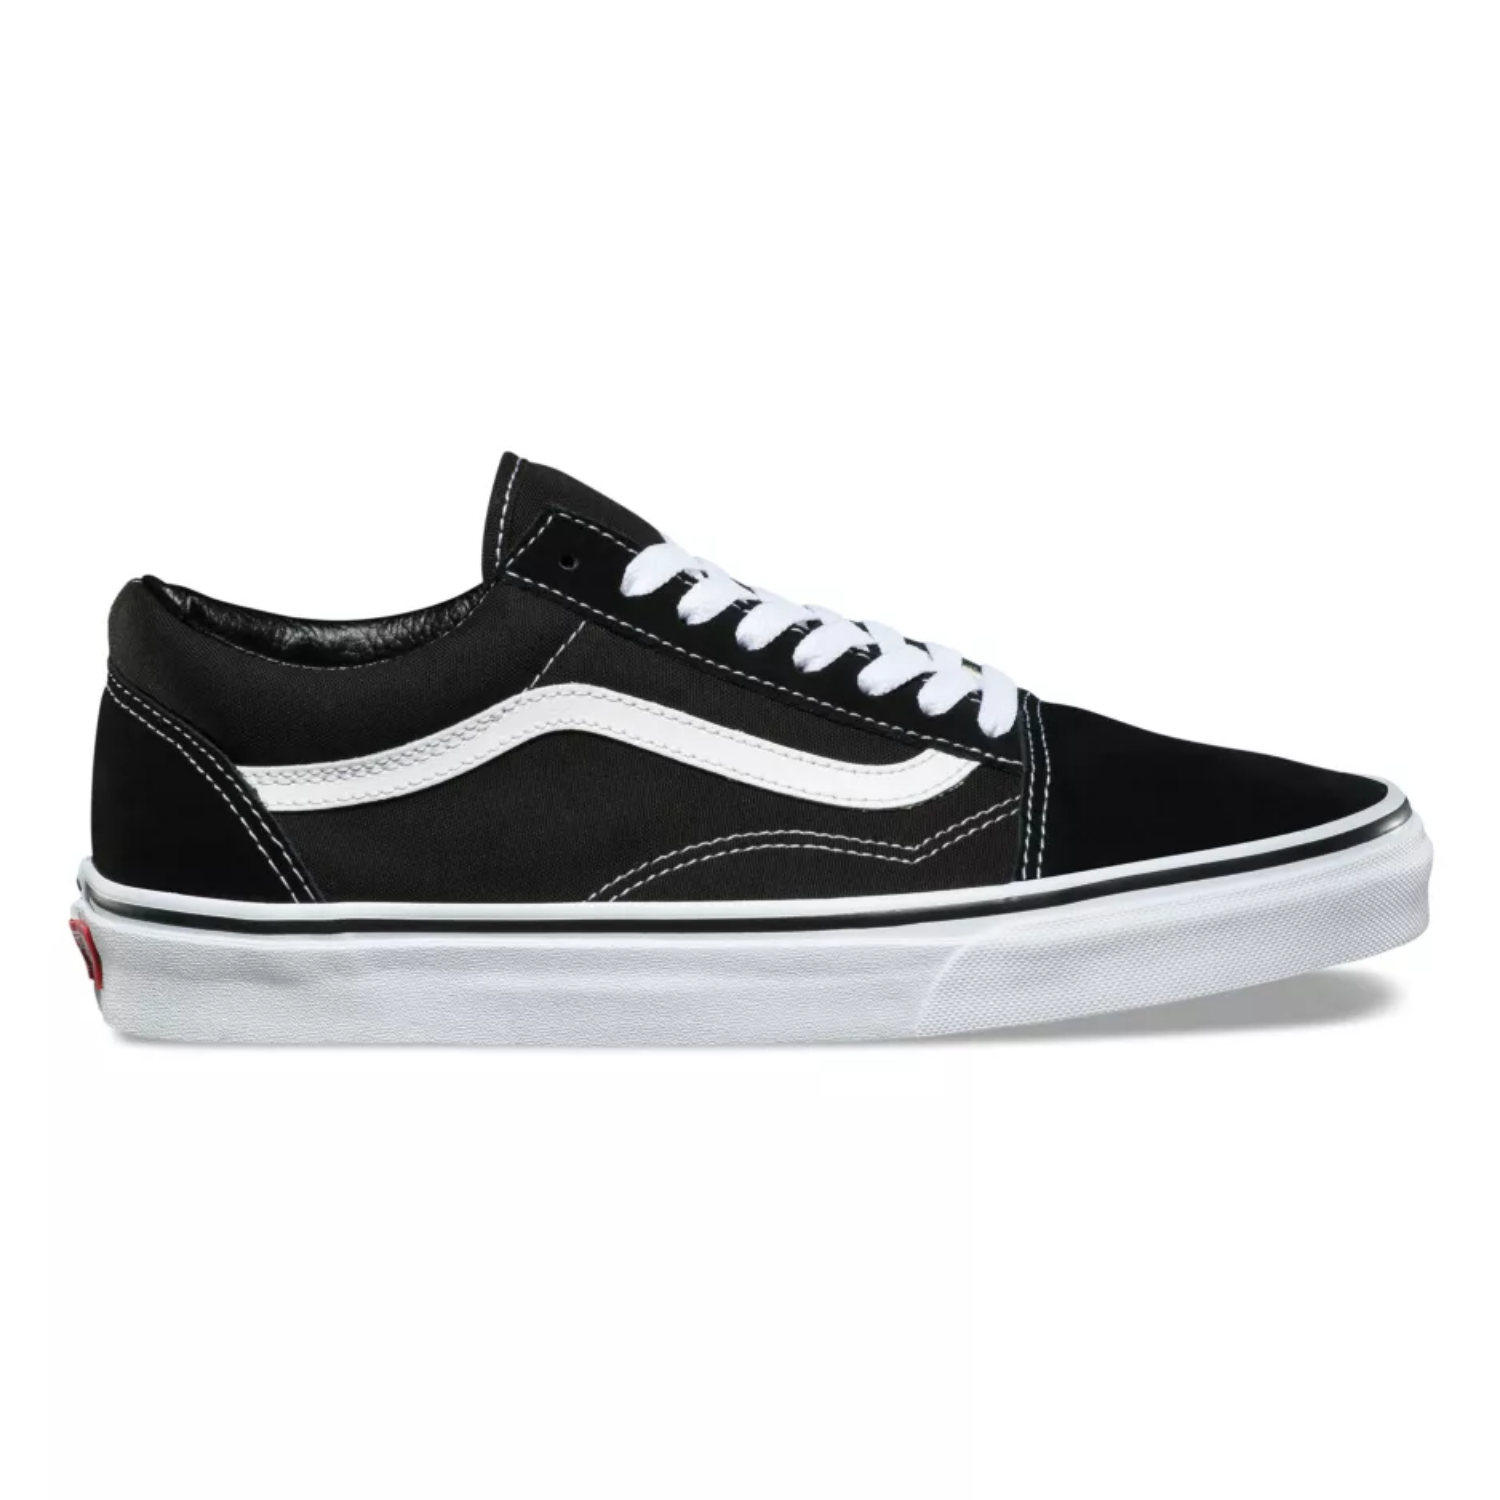 kaldenavn Terapi ægtefælle Vans Skate Old Skool Black/White Skate Shoes For Sale